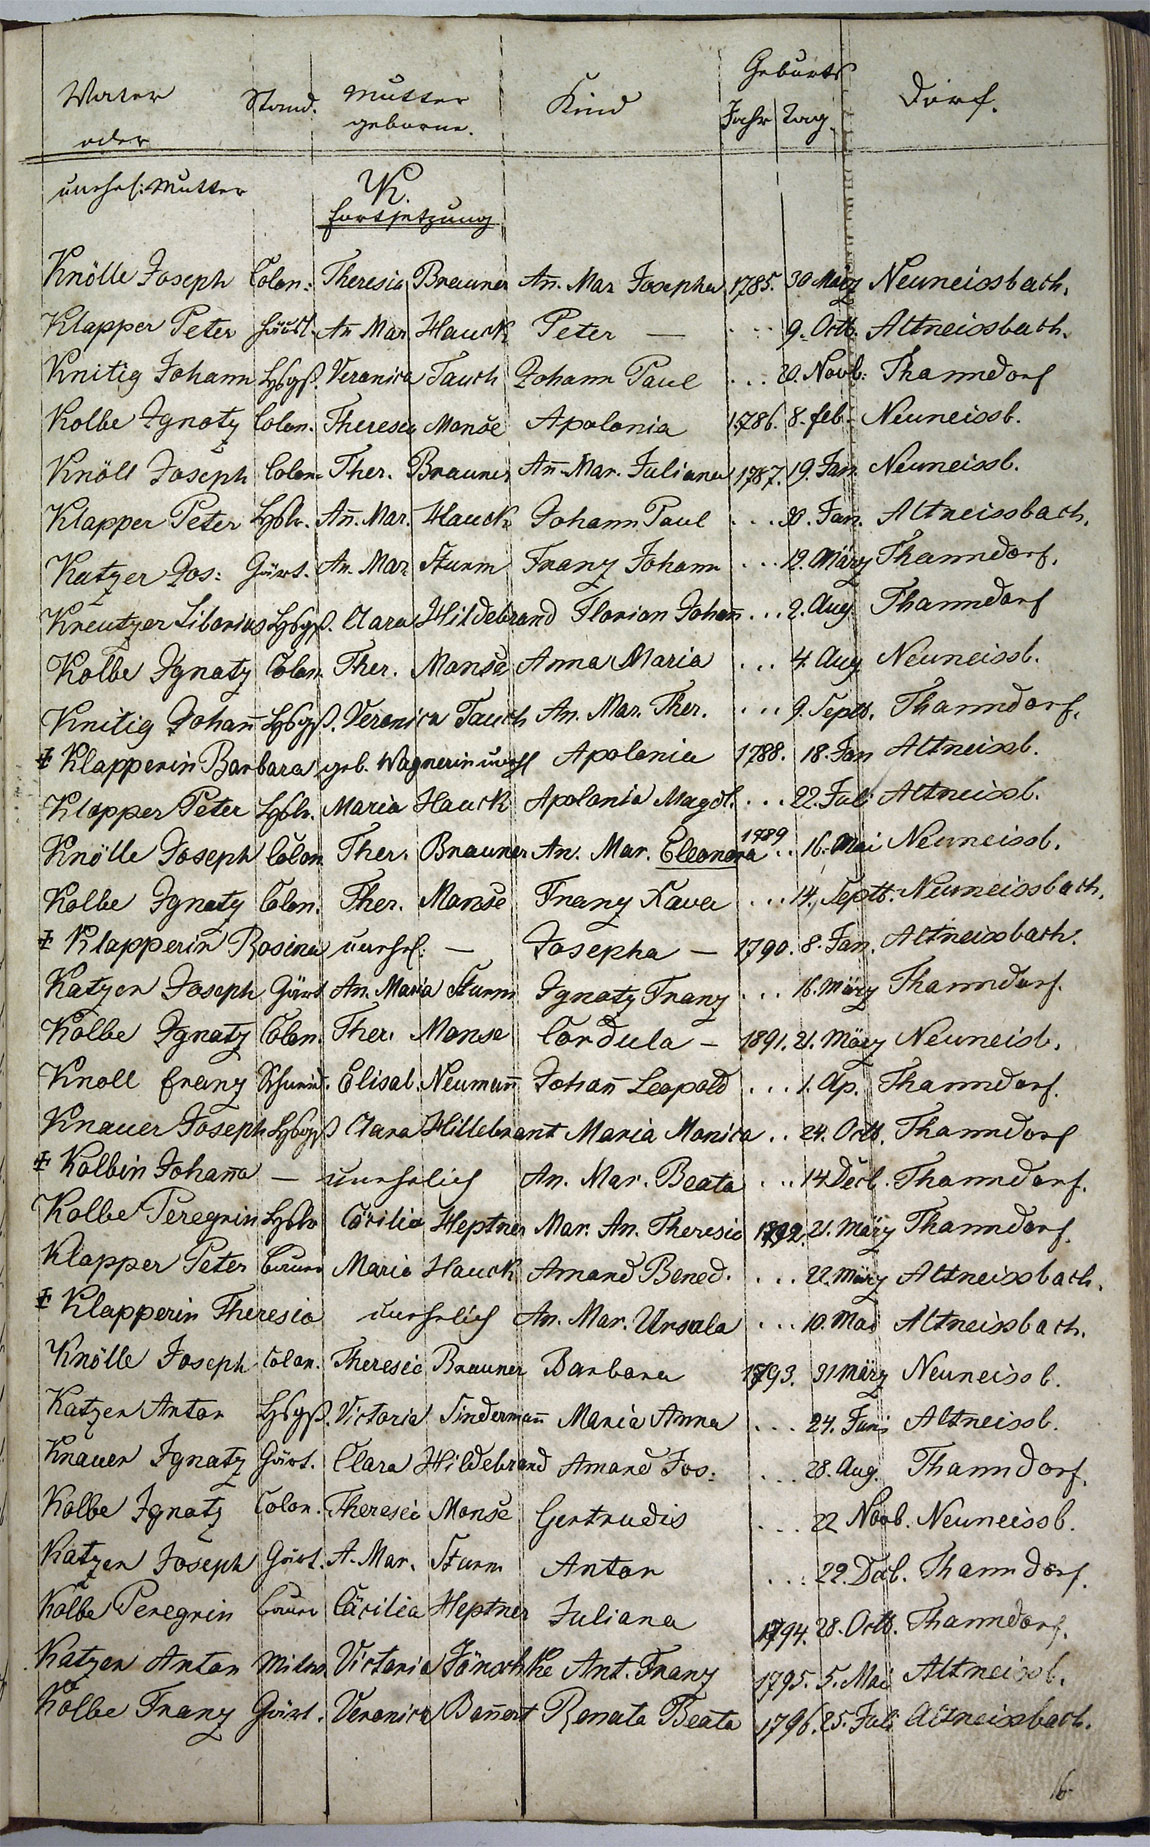 Taufregister 1770 - 1889 Seite 75